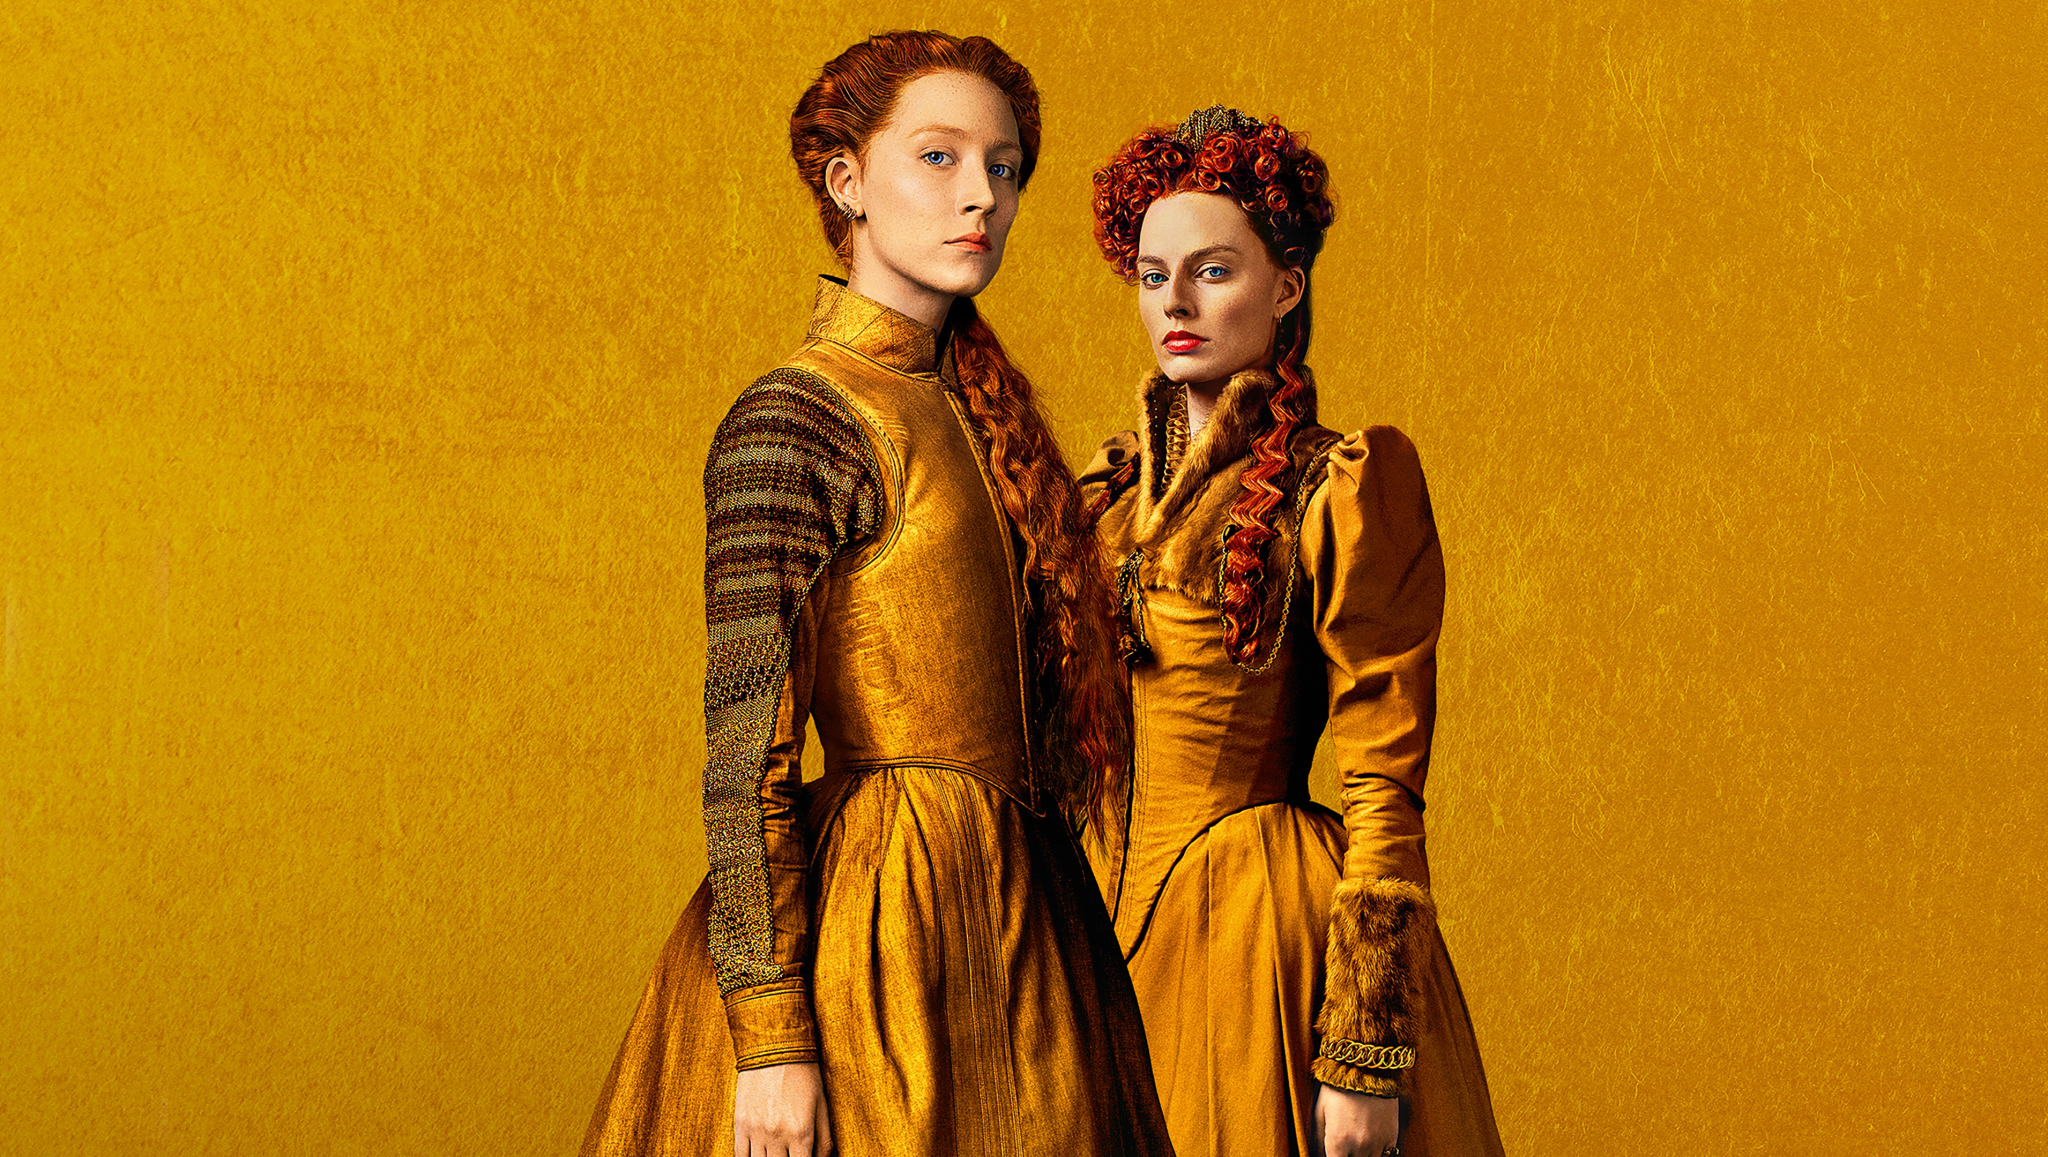 Machtkampf zweier Monarchinnen: Max Richters neue Musik zum Film "Maria Stuart, Königin von Schottland"